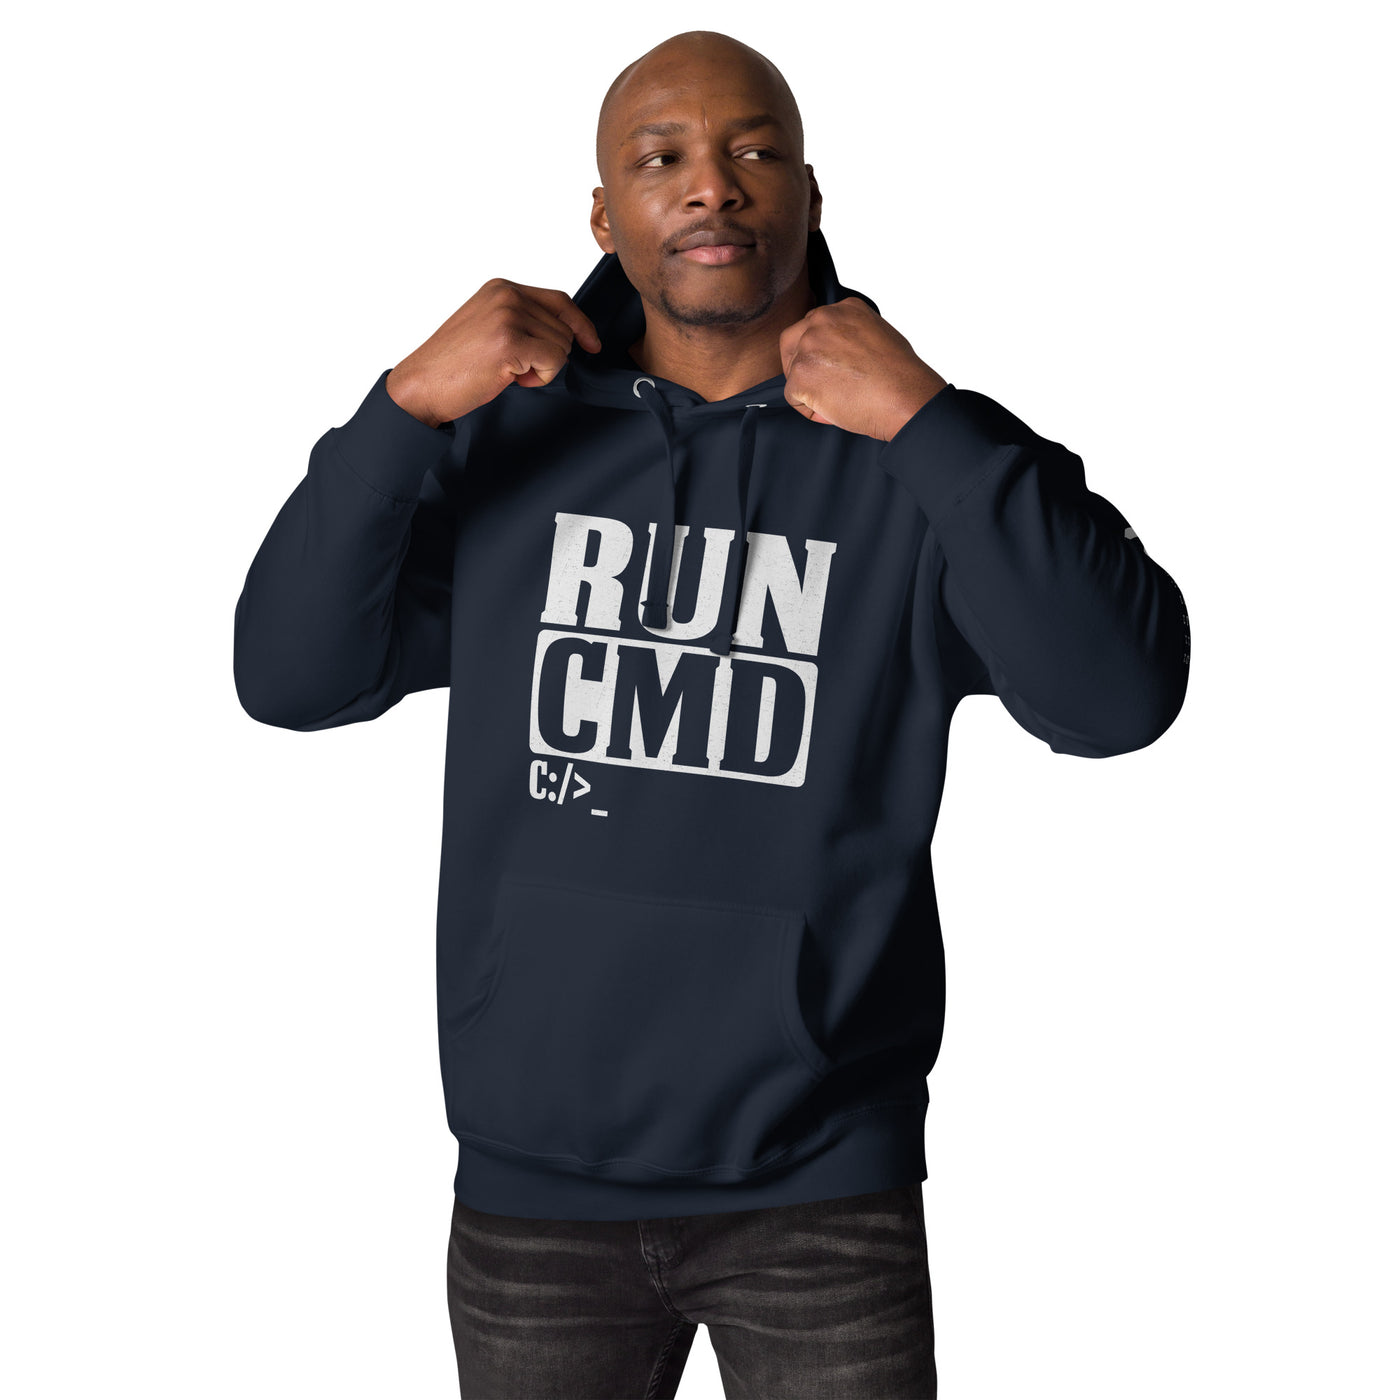 Run CMD C:/>_ - Unisex Hoodie